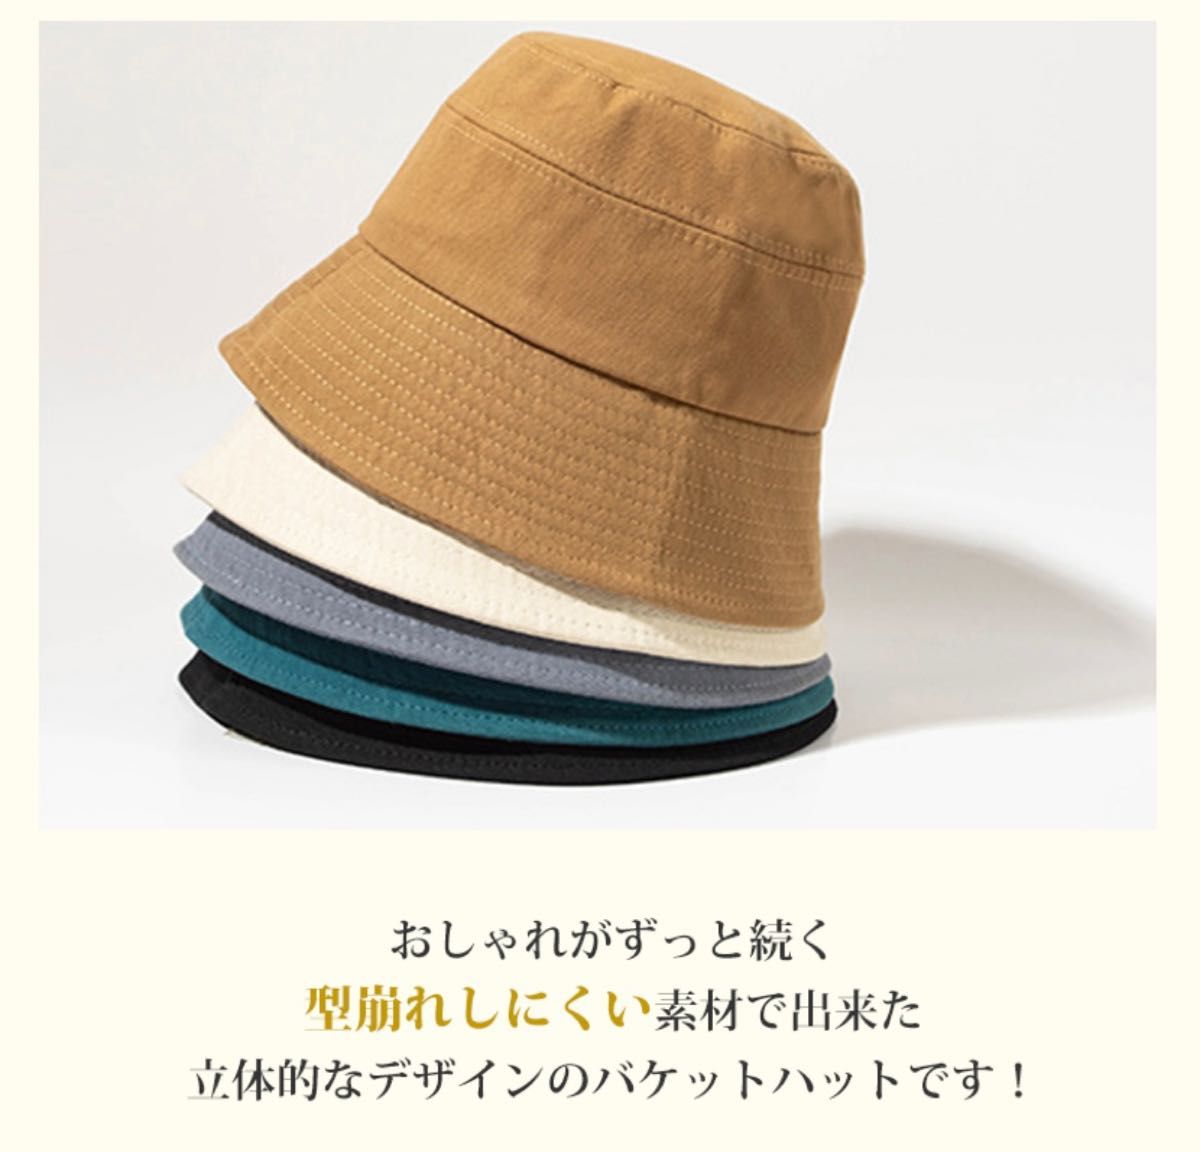 つば広ハット 日よけ帽子 紫外線対策 帽子レディース 帽子 バケットハット ハット 紫外線カット 日よけ UVカット